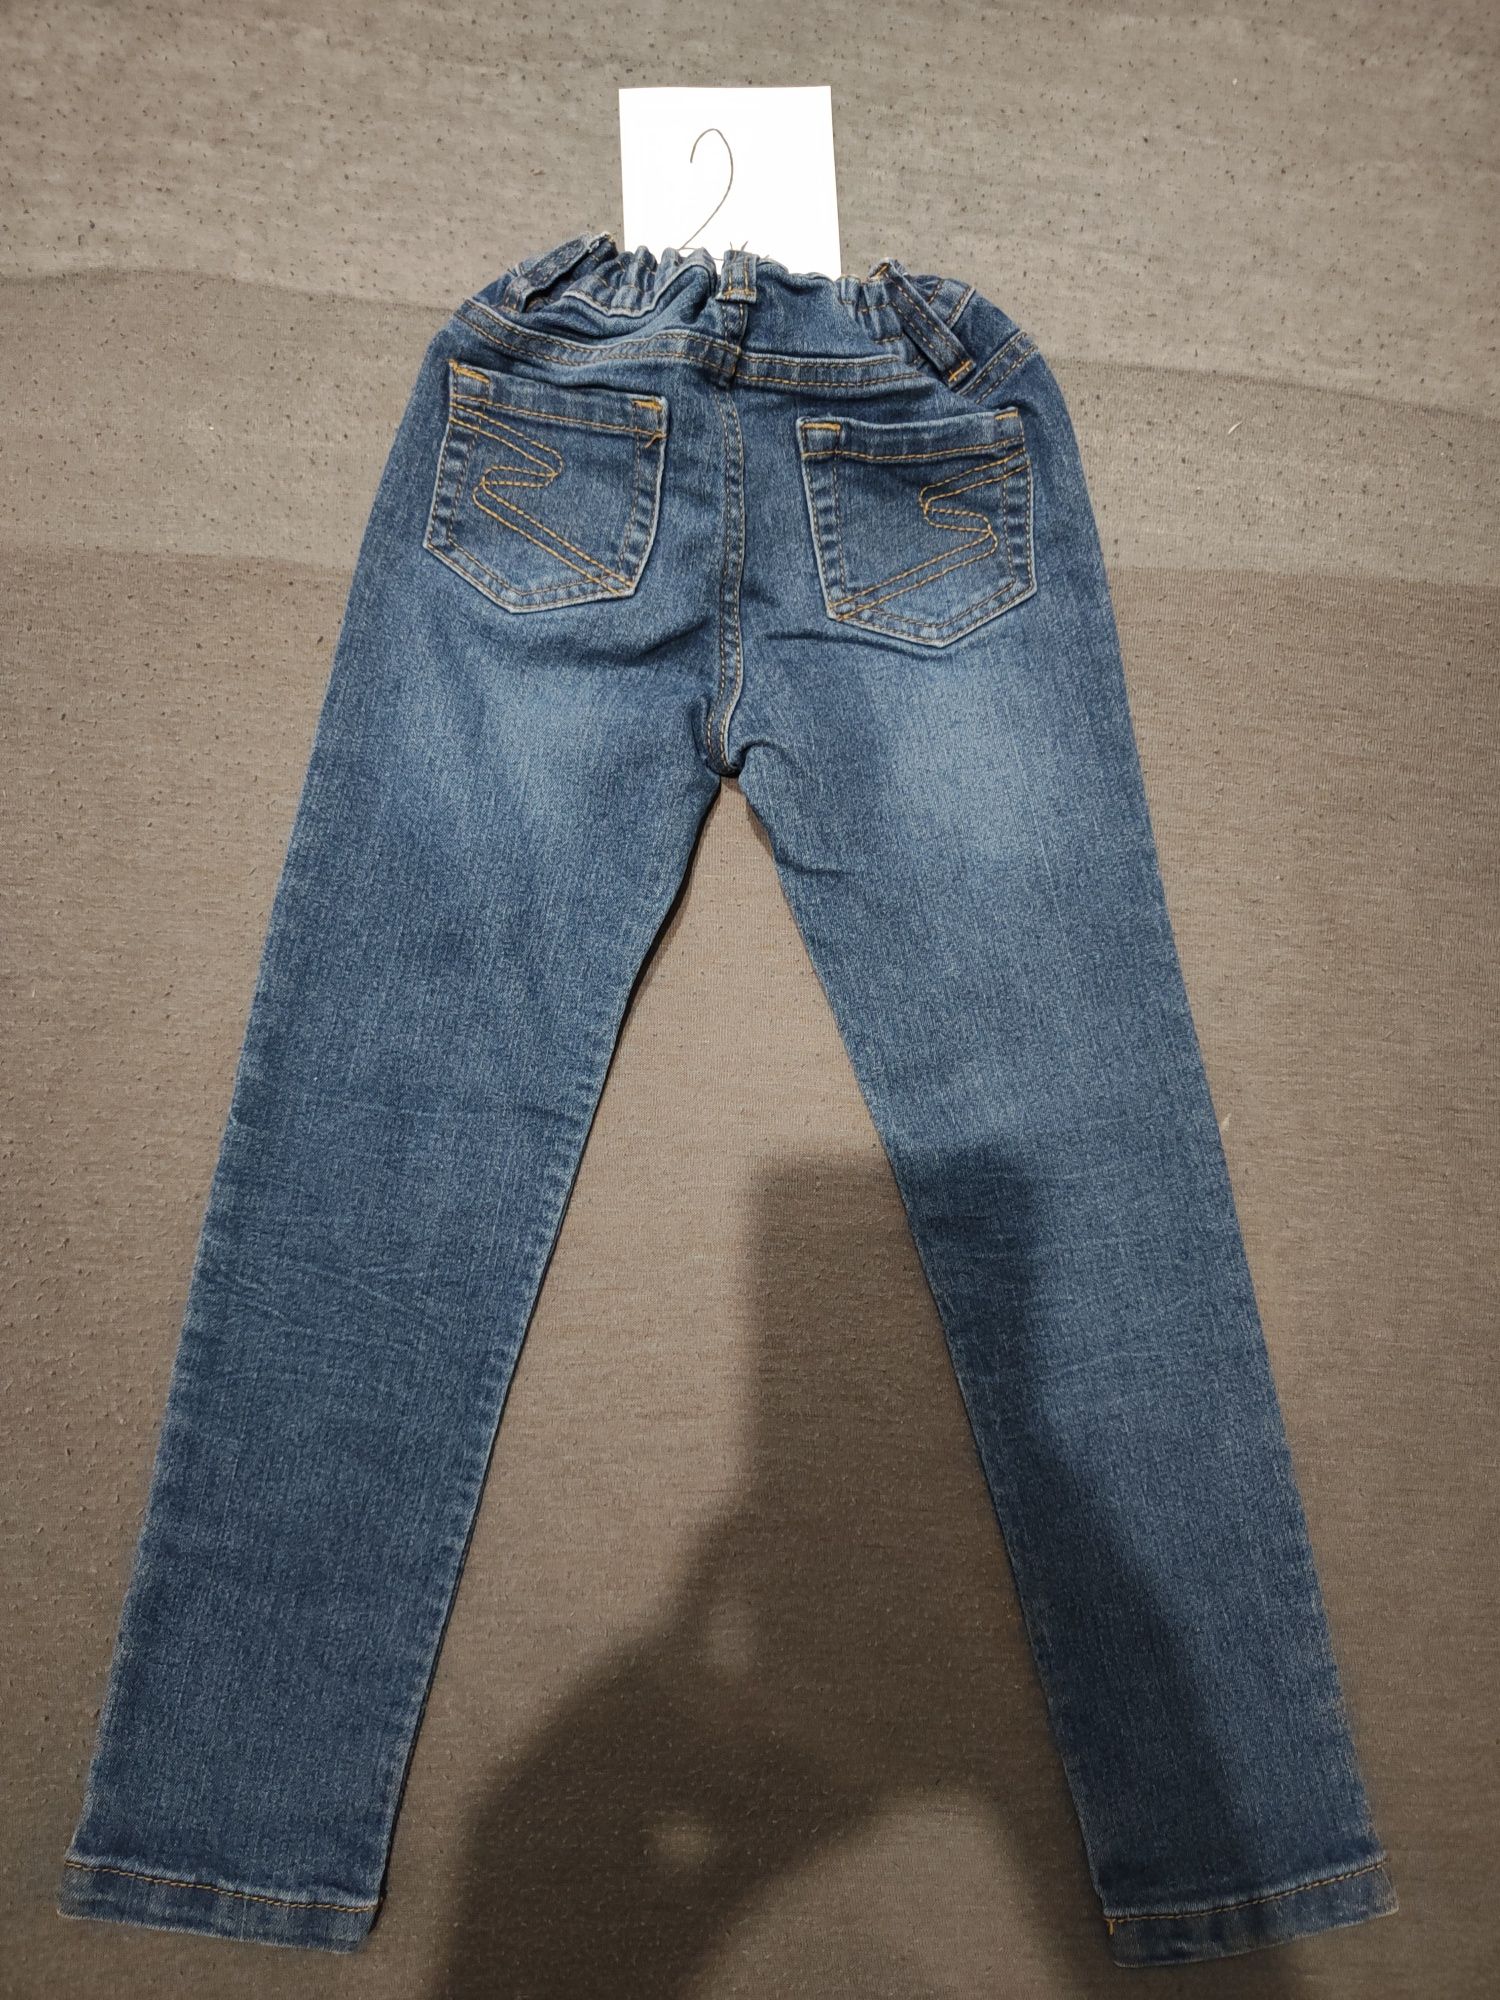 Spodnie chłopięce jeansowe r.110/116 cm.